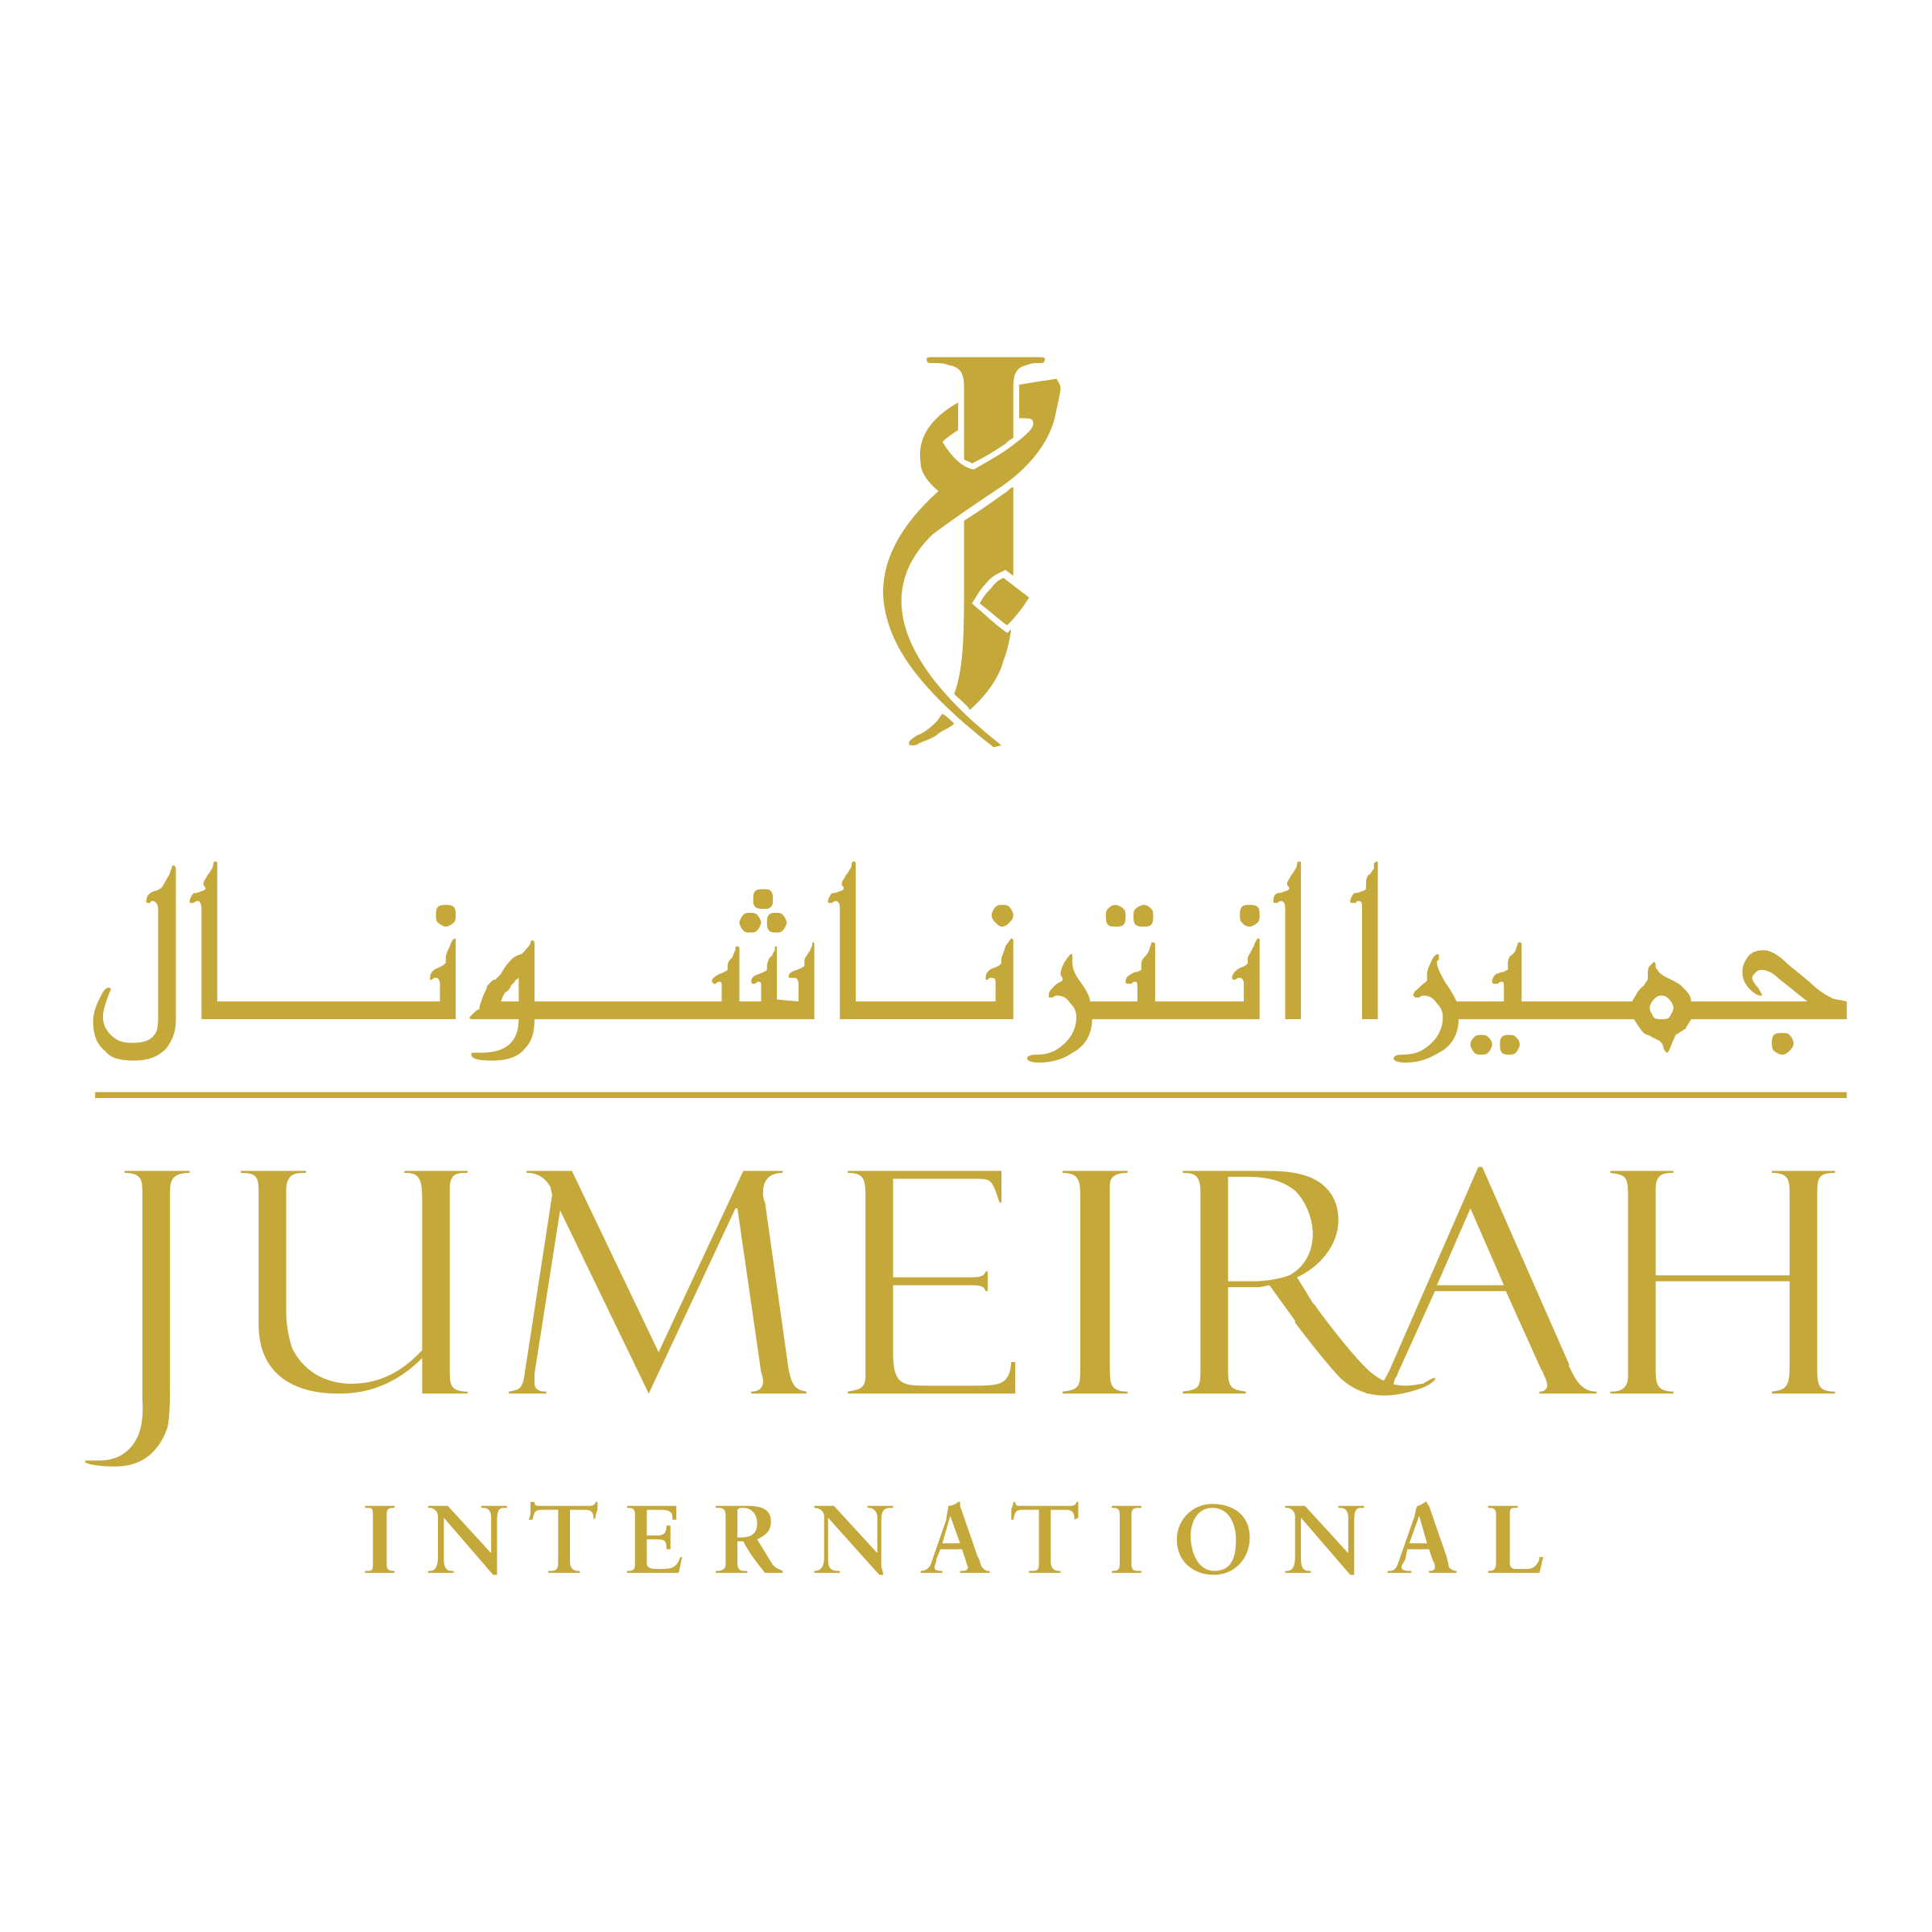 Jumeirah Logo - Jumeirah International Logo PNG Transparent & SVG Vector